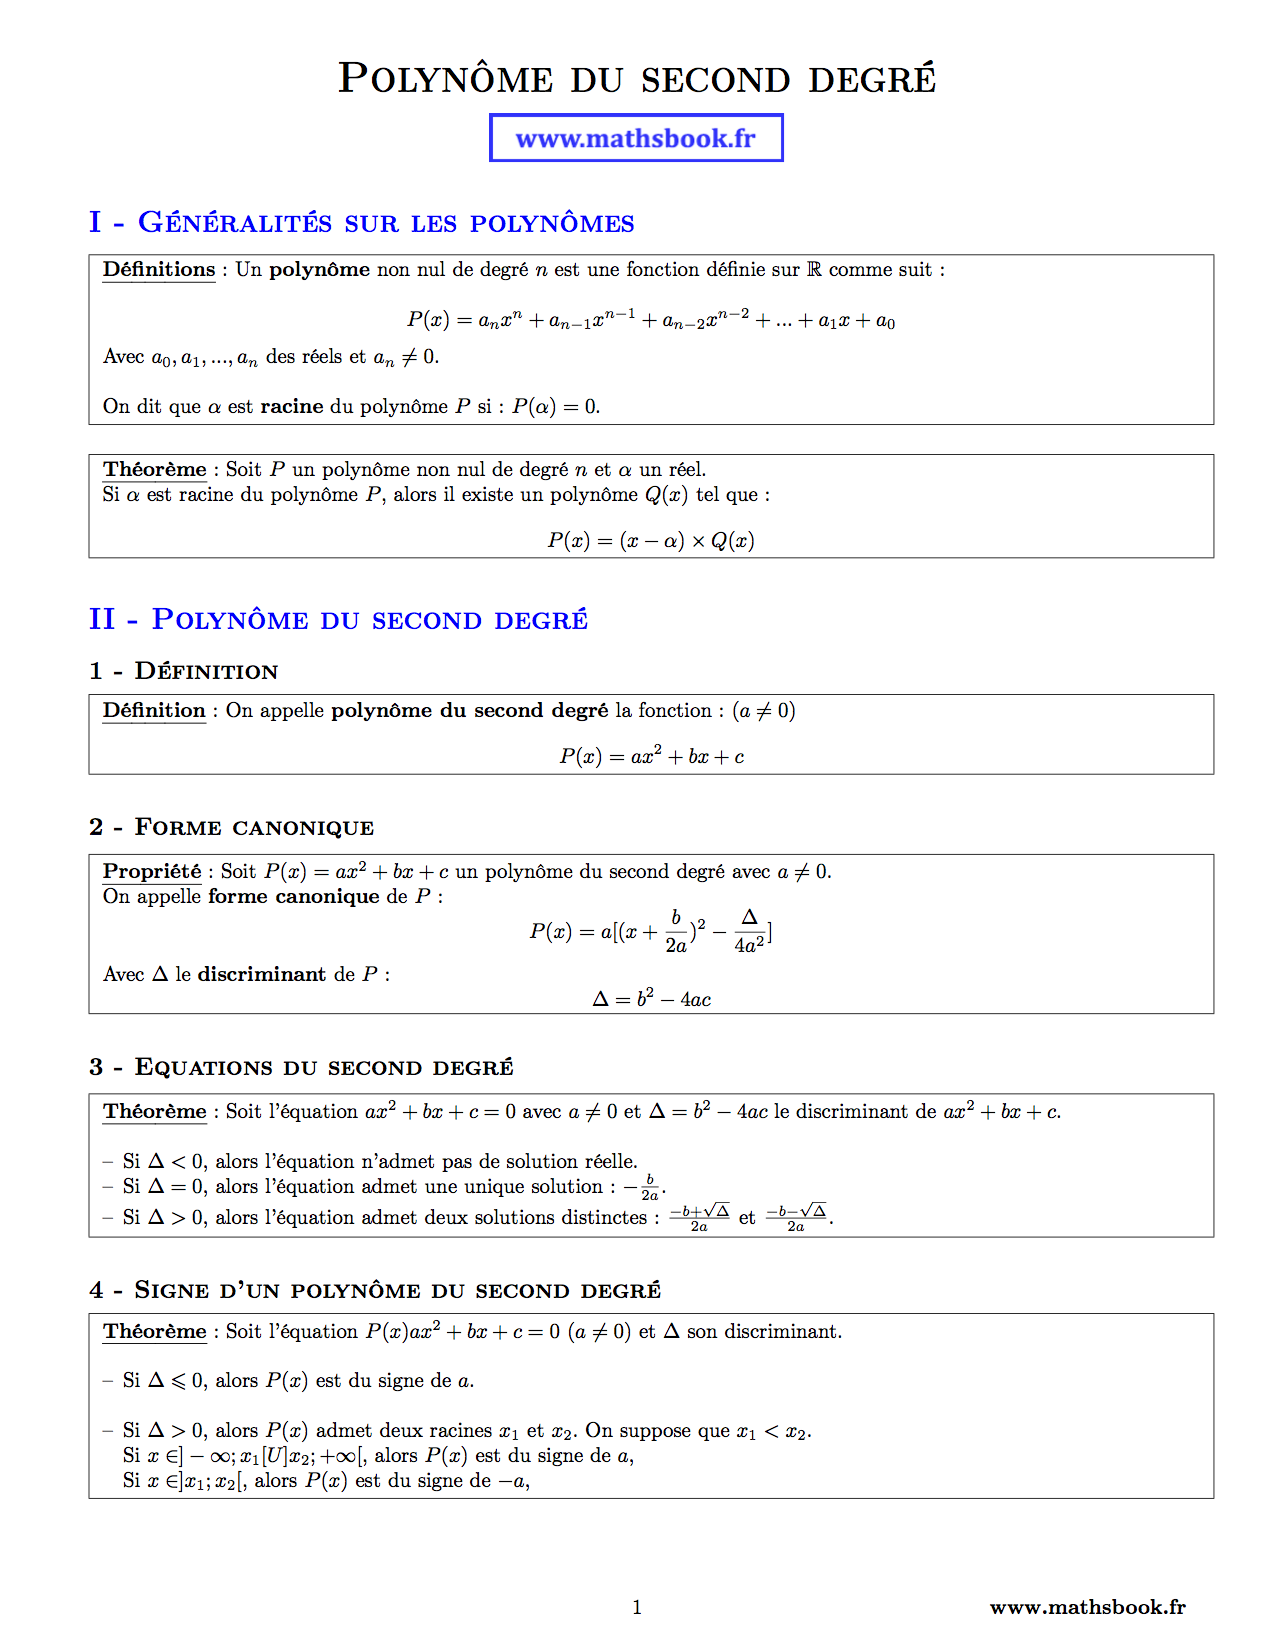 Polynôme du second degré : Fiches de révision | Maths ...